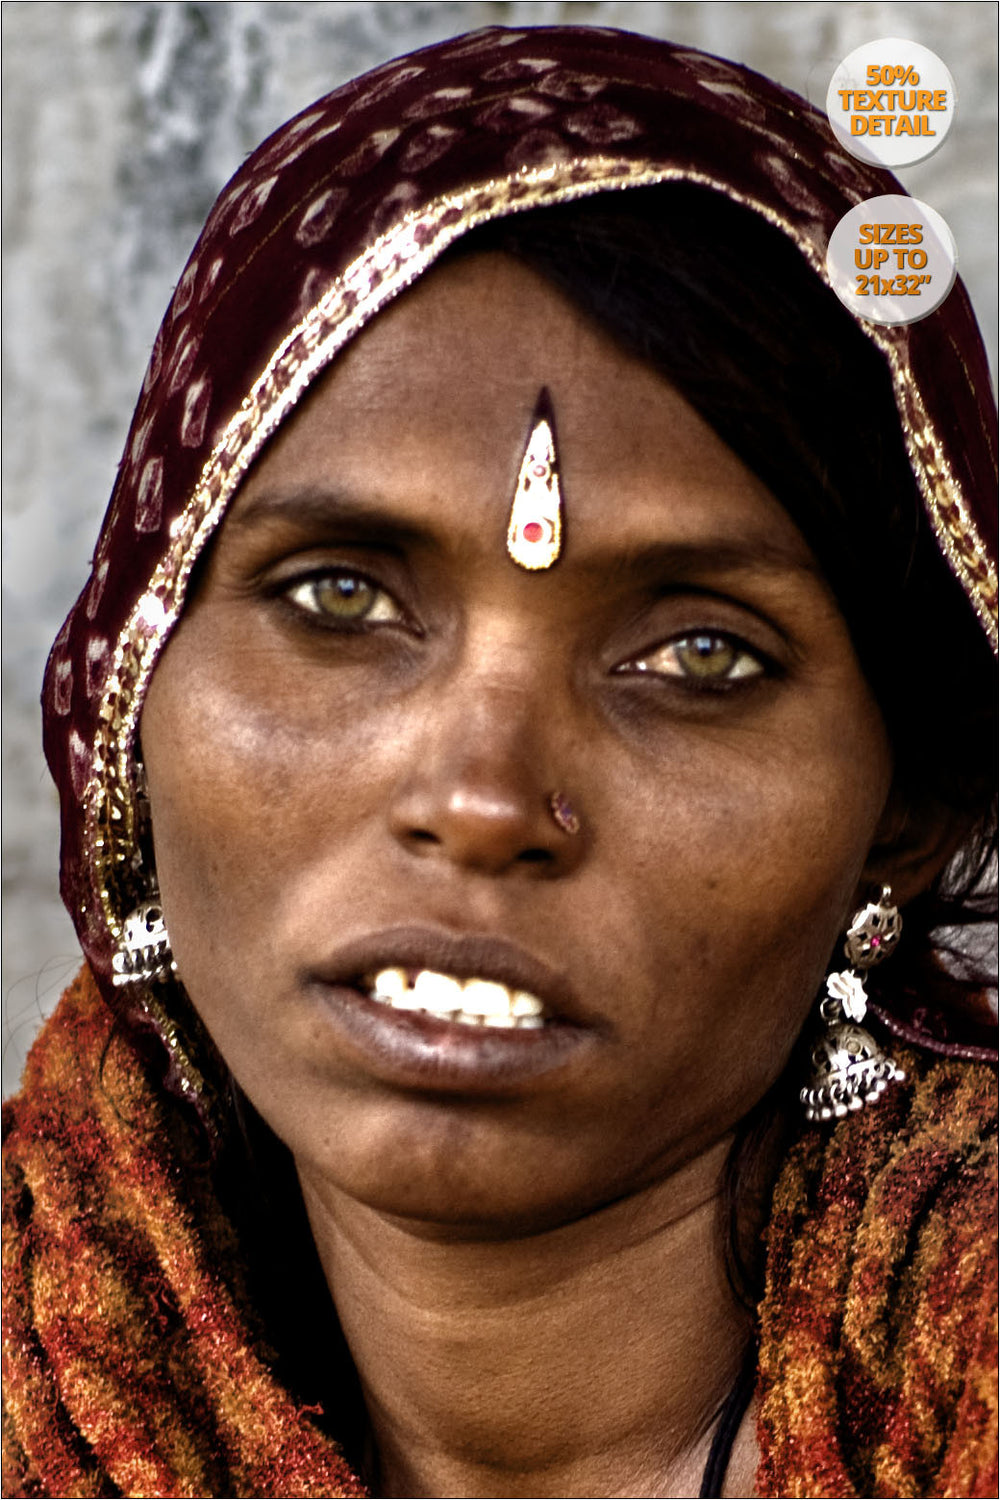 Portrait of Rajastani woman, Pushkar Camel Fair, Rajastan. | 50% Detail view.